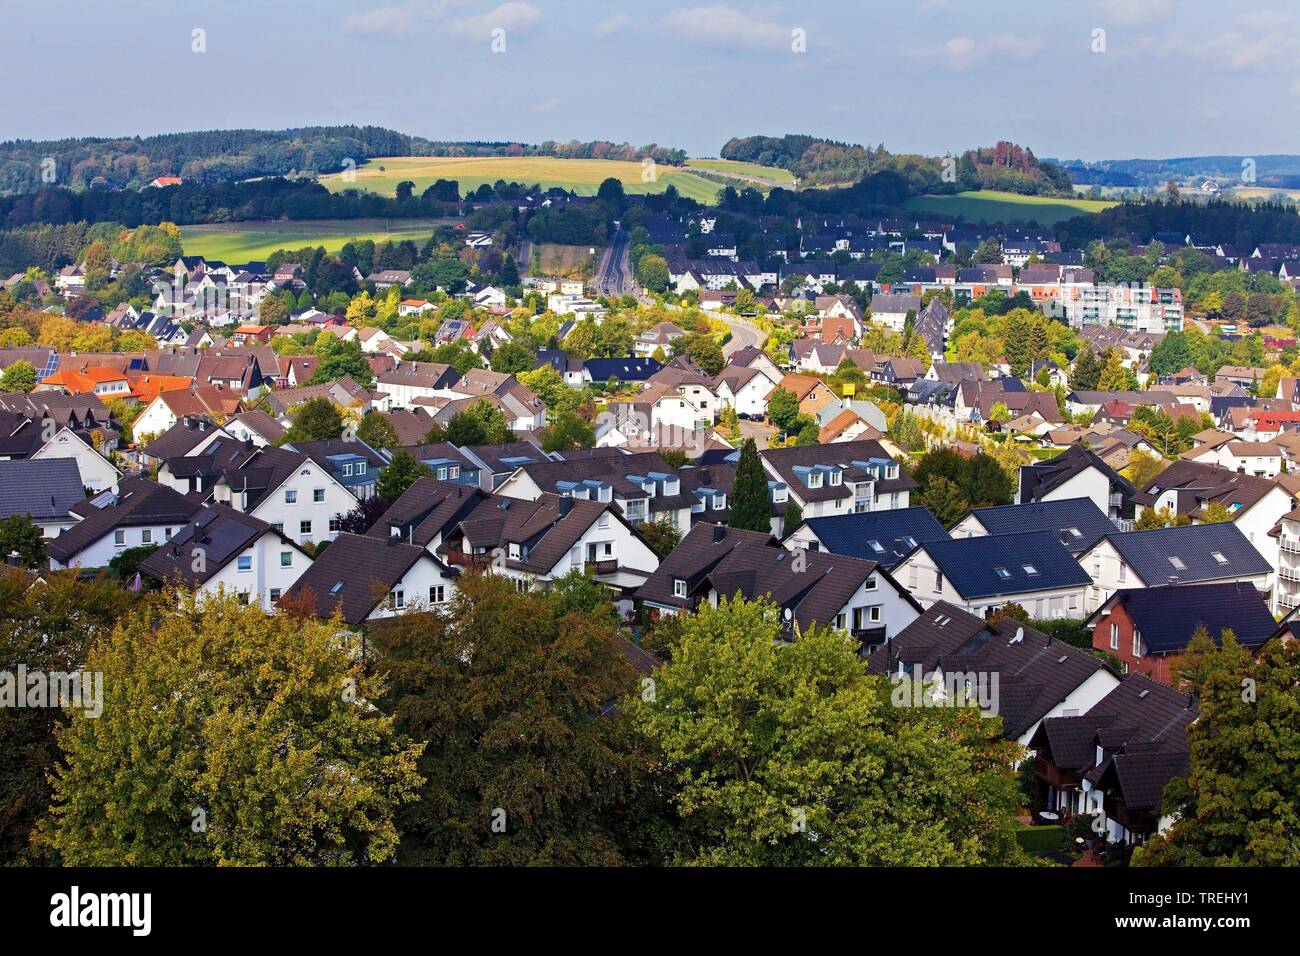 aerial view of a settlement, Germany, North Rhine-Westphalia, Sauerland, Meinerzhagen Stock Photo